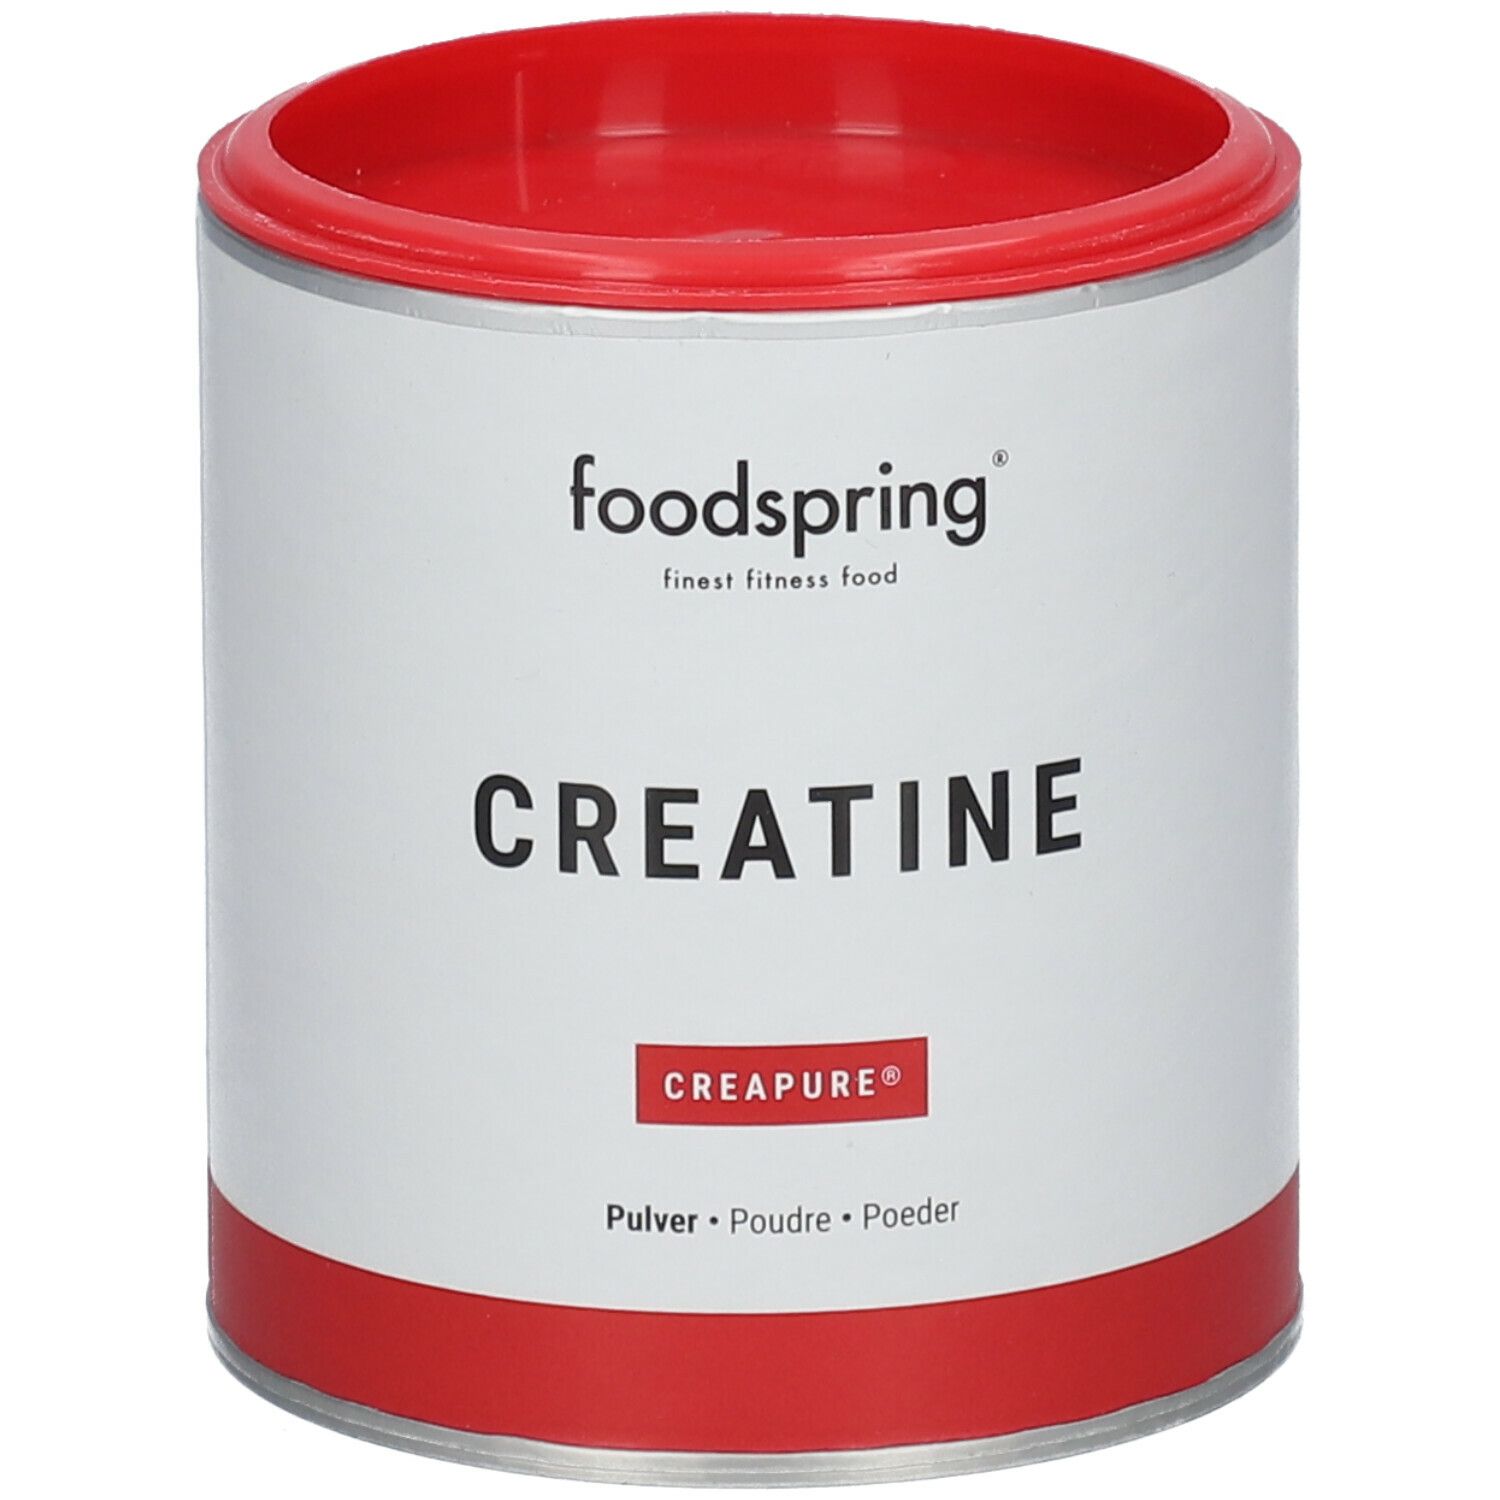 foodspring® Creatine